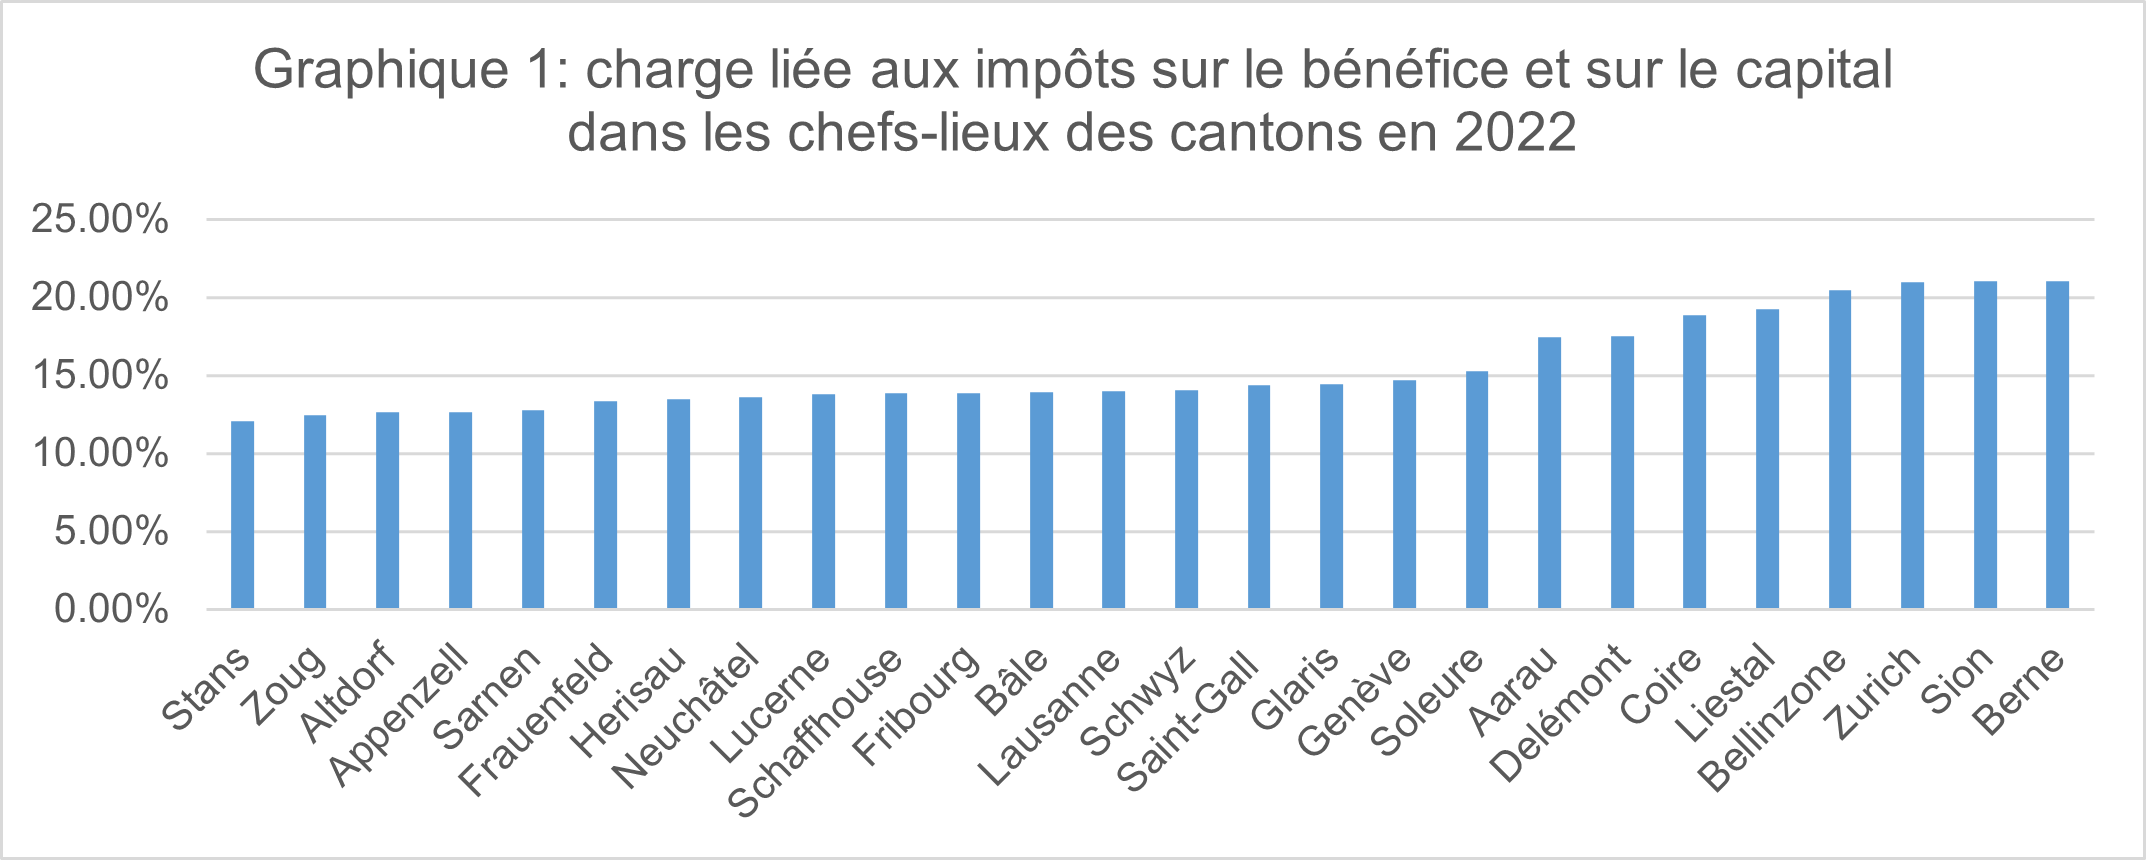 Graphique 1: charge liée aux impôts sur le bénéfice et sur le capital dans les chefs-lieux des cantons en 2022